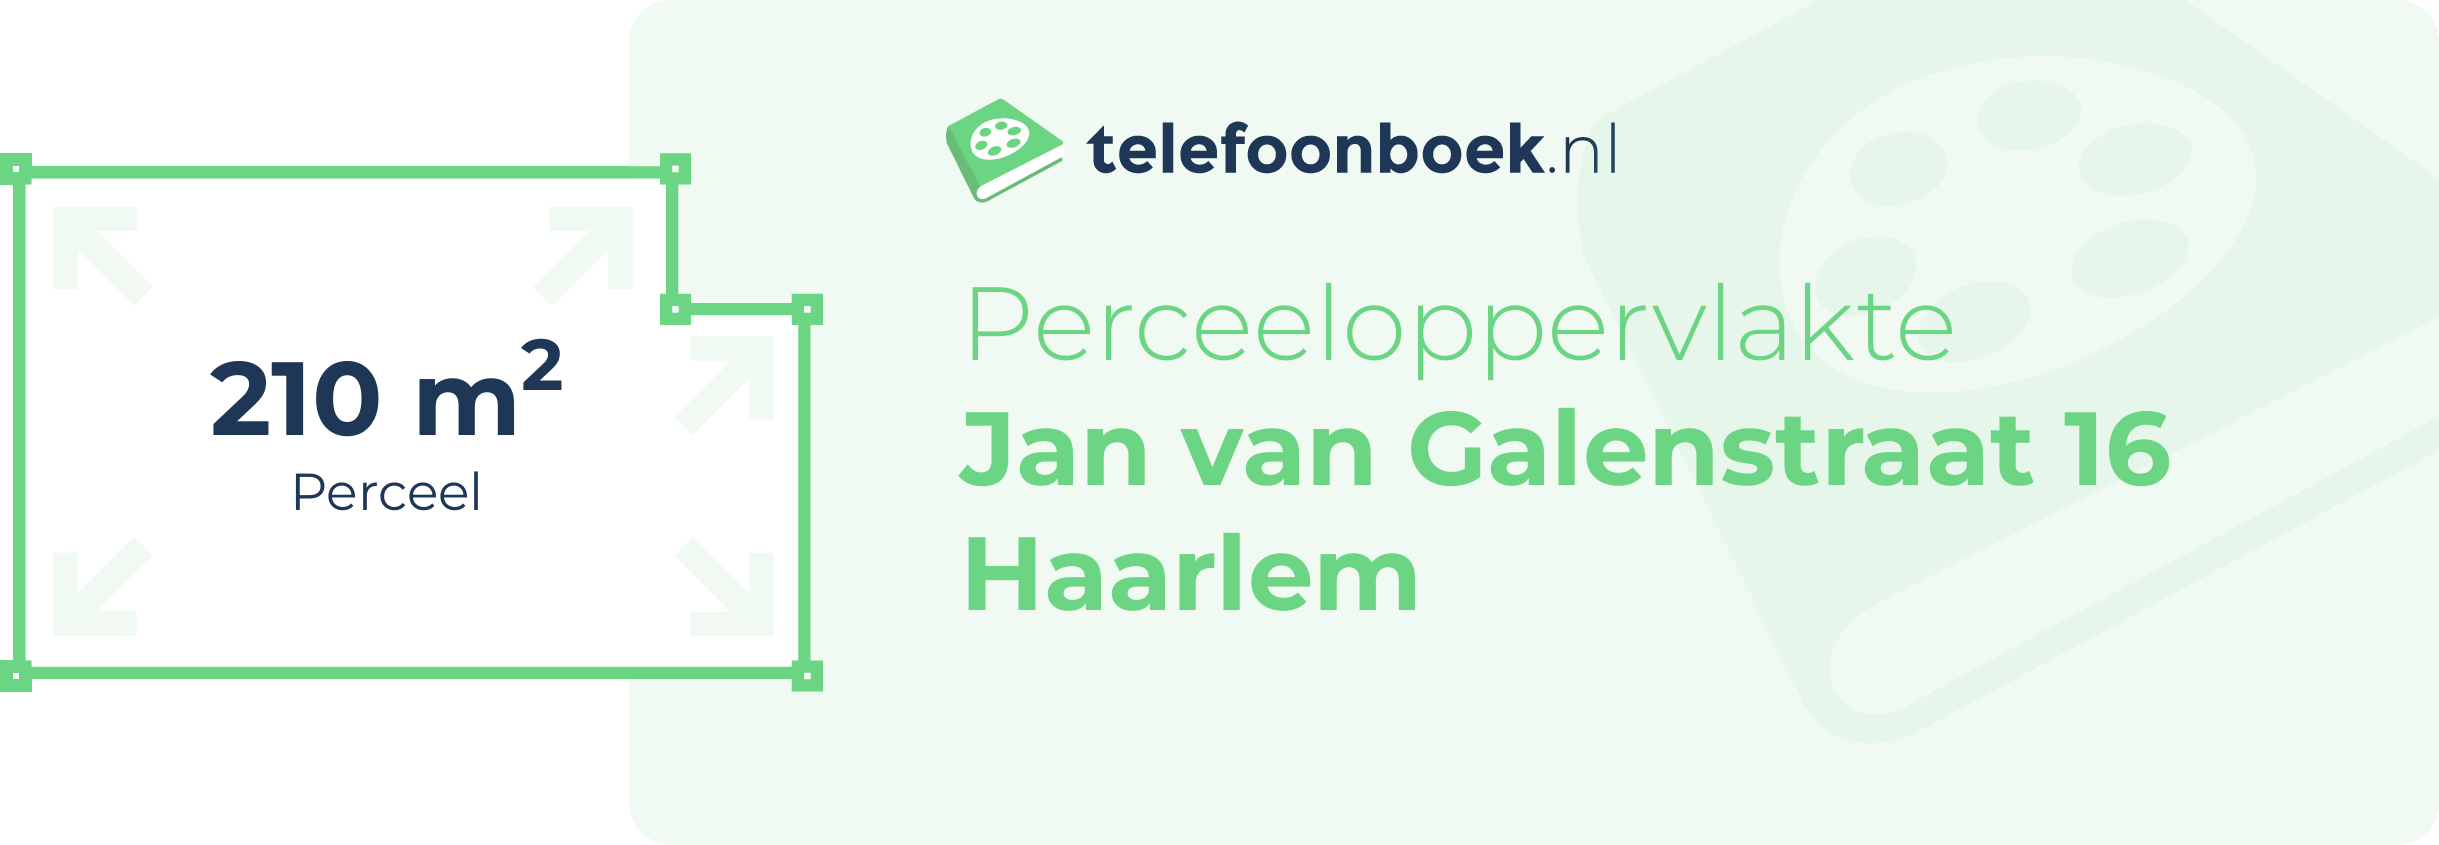 Perceeloppervlakte Jan Van Galenstraat 16 Haarlem